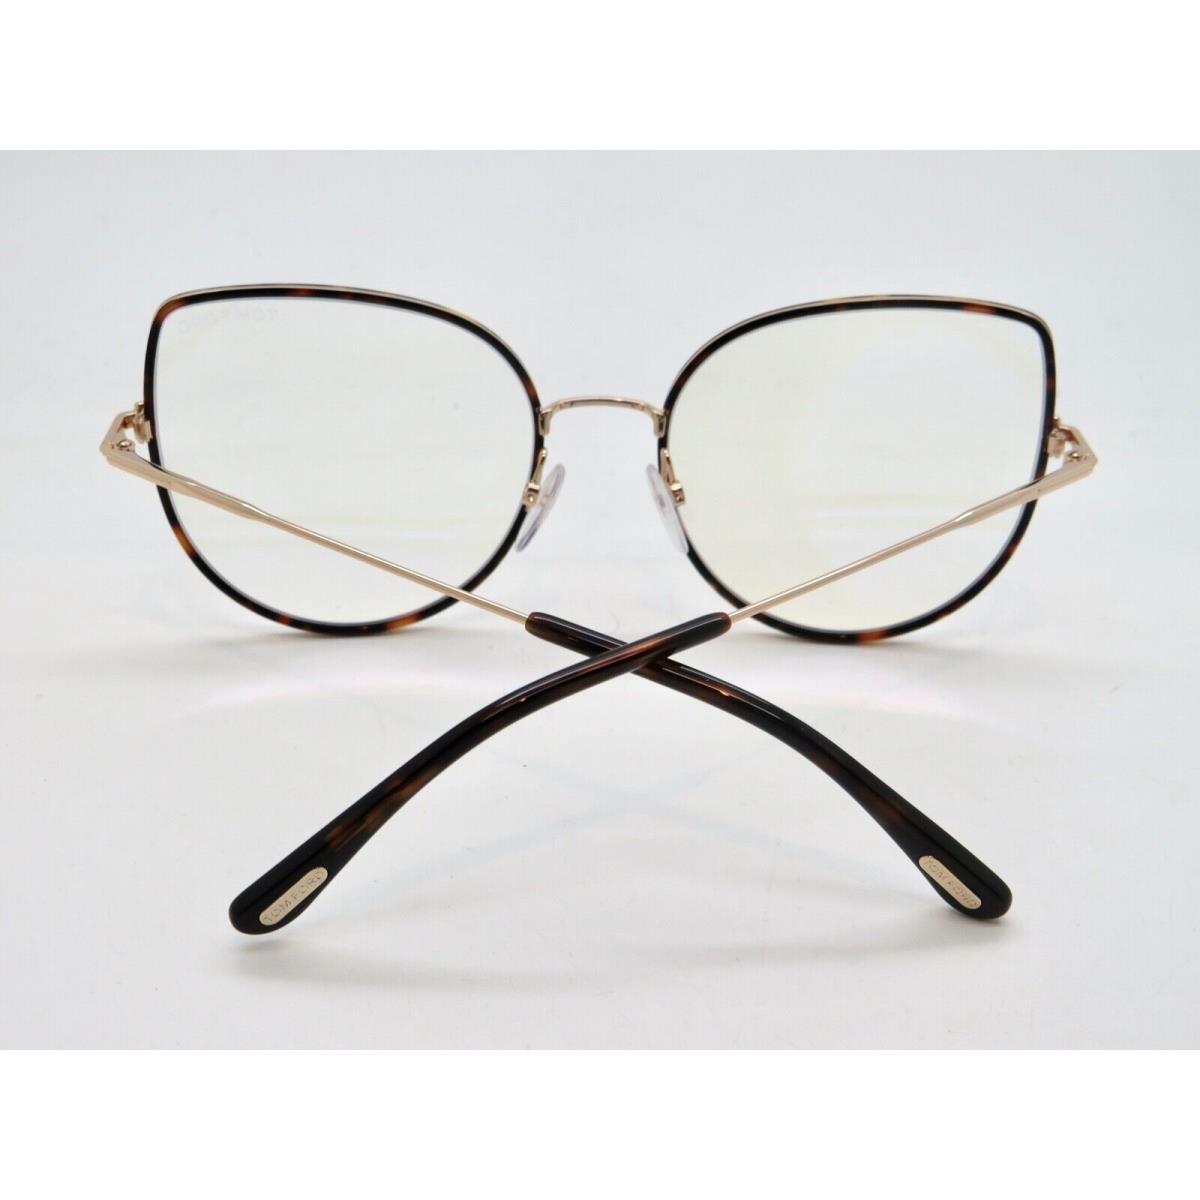 Tom Ford eyeglasses  - Havana Tortoise/Gold Frame 1